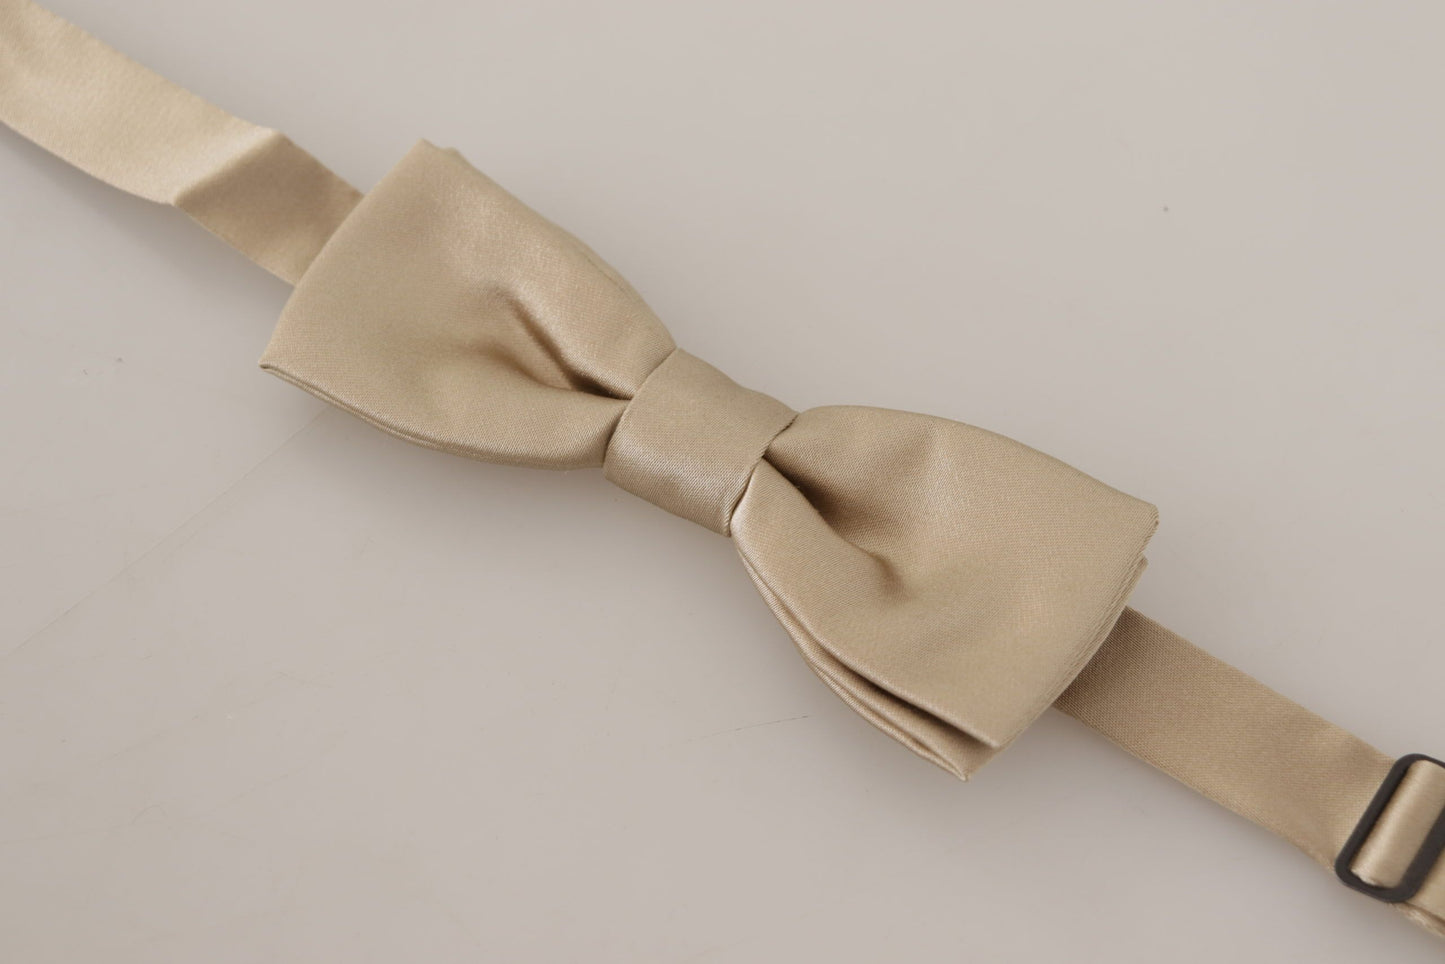 Dazzling Gold Silk Bow Tie